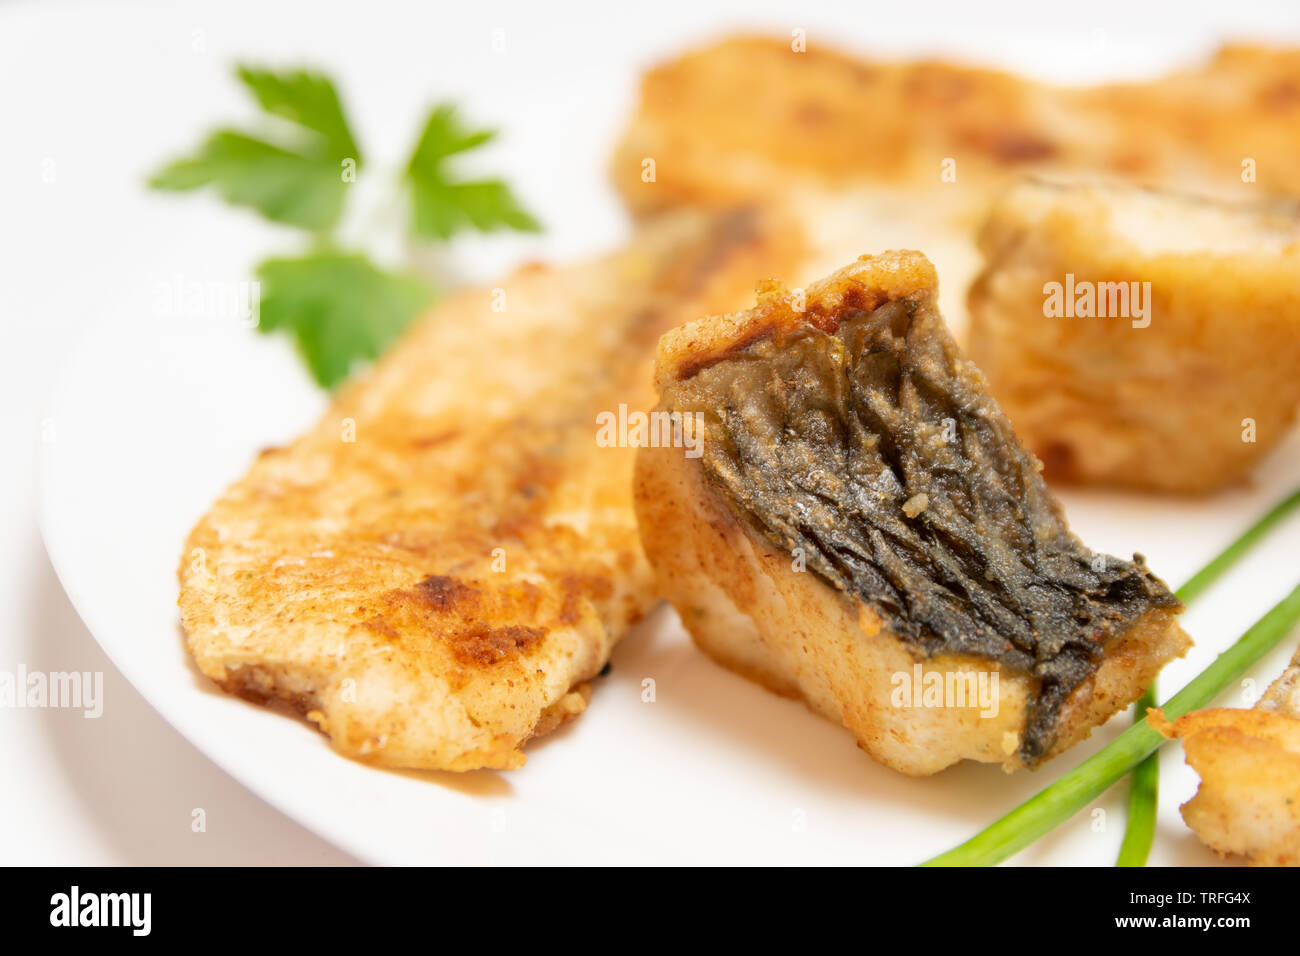 Leckeres Essen, Ernährung, Küche und kulinarische Konzept: closeup Stücke gebraten, gebacken, golden und lecker Fisch auf einem weißen Teller. Stockfoto